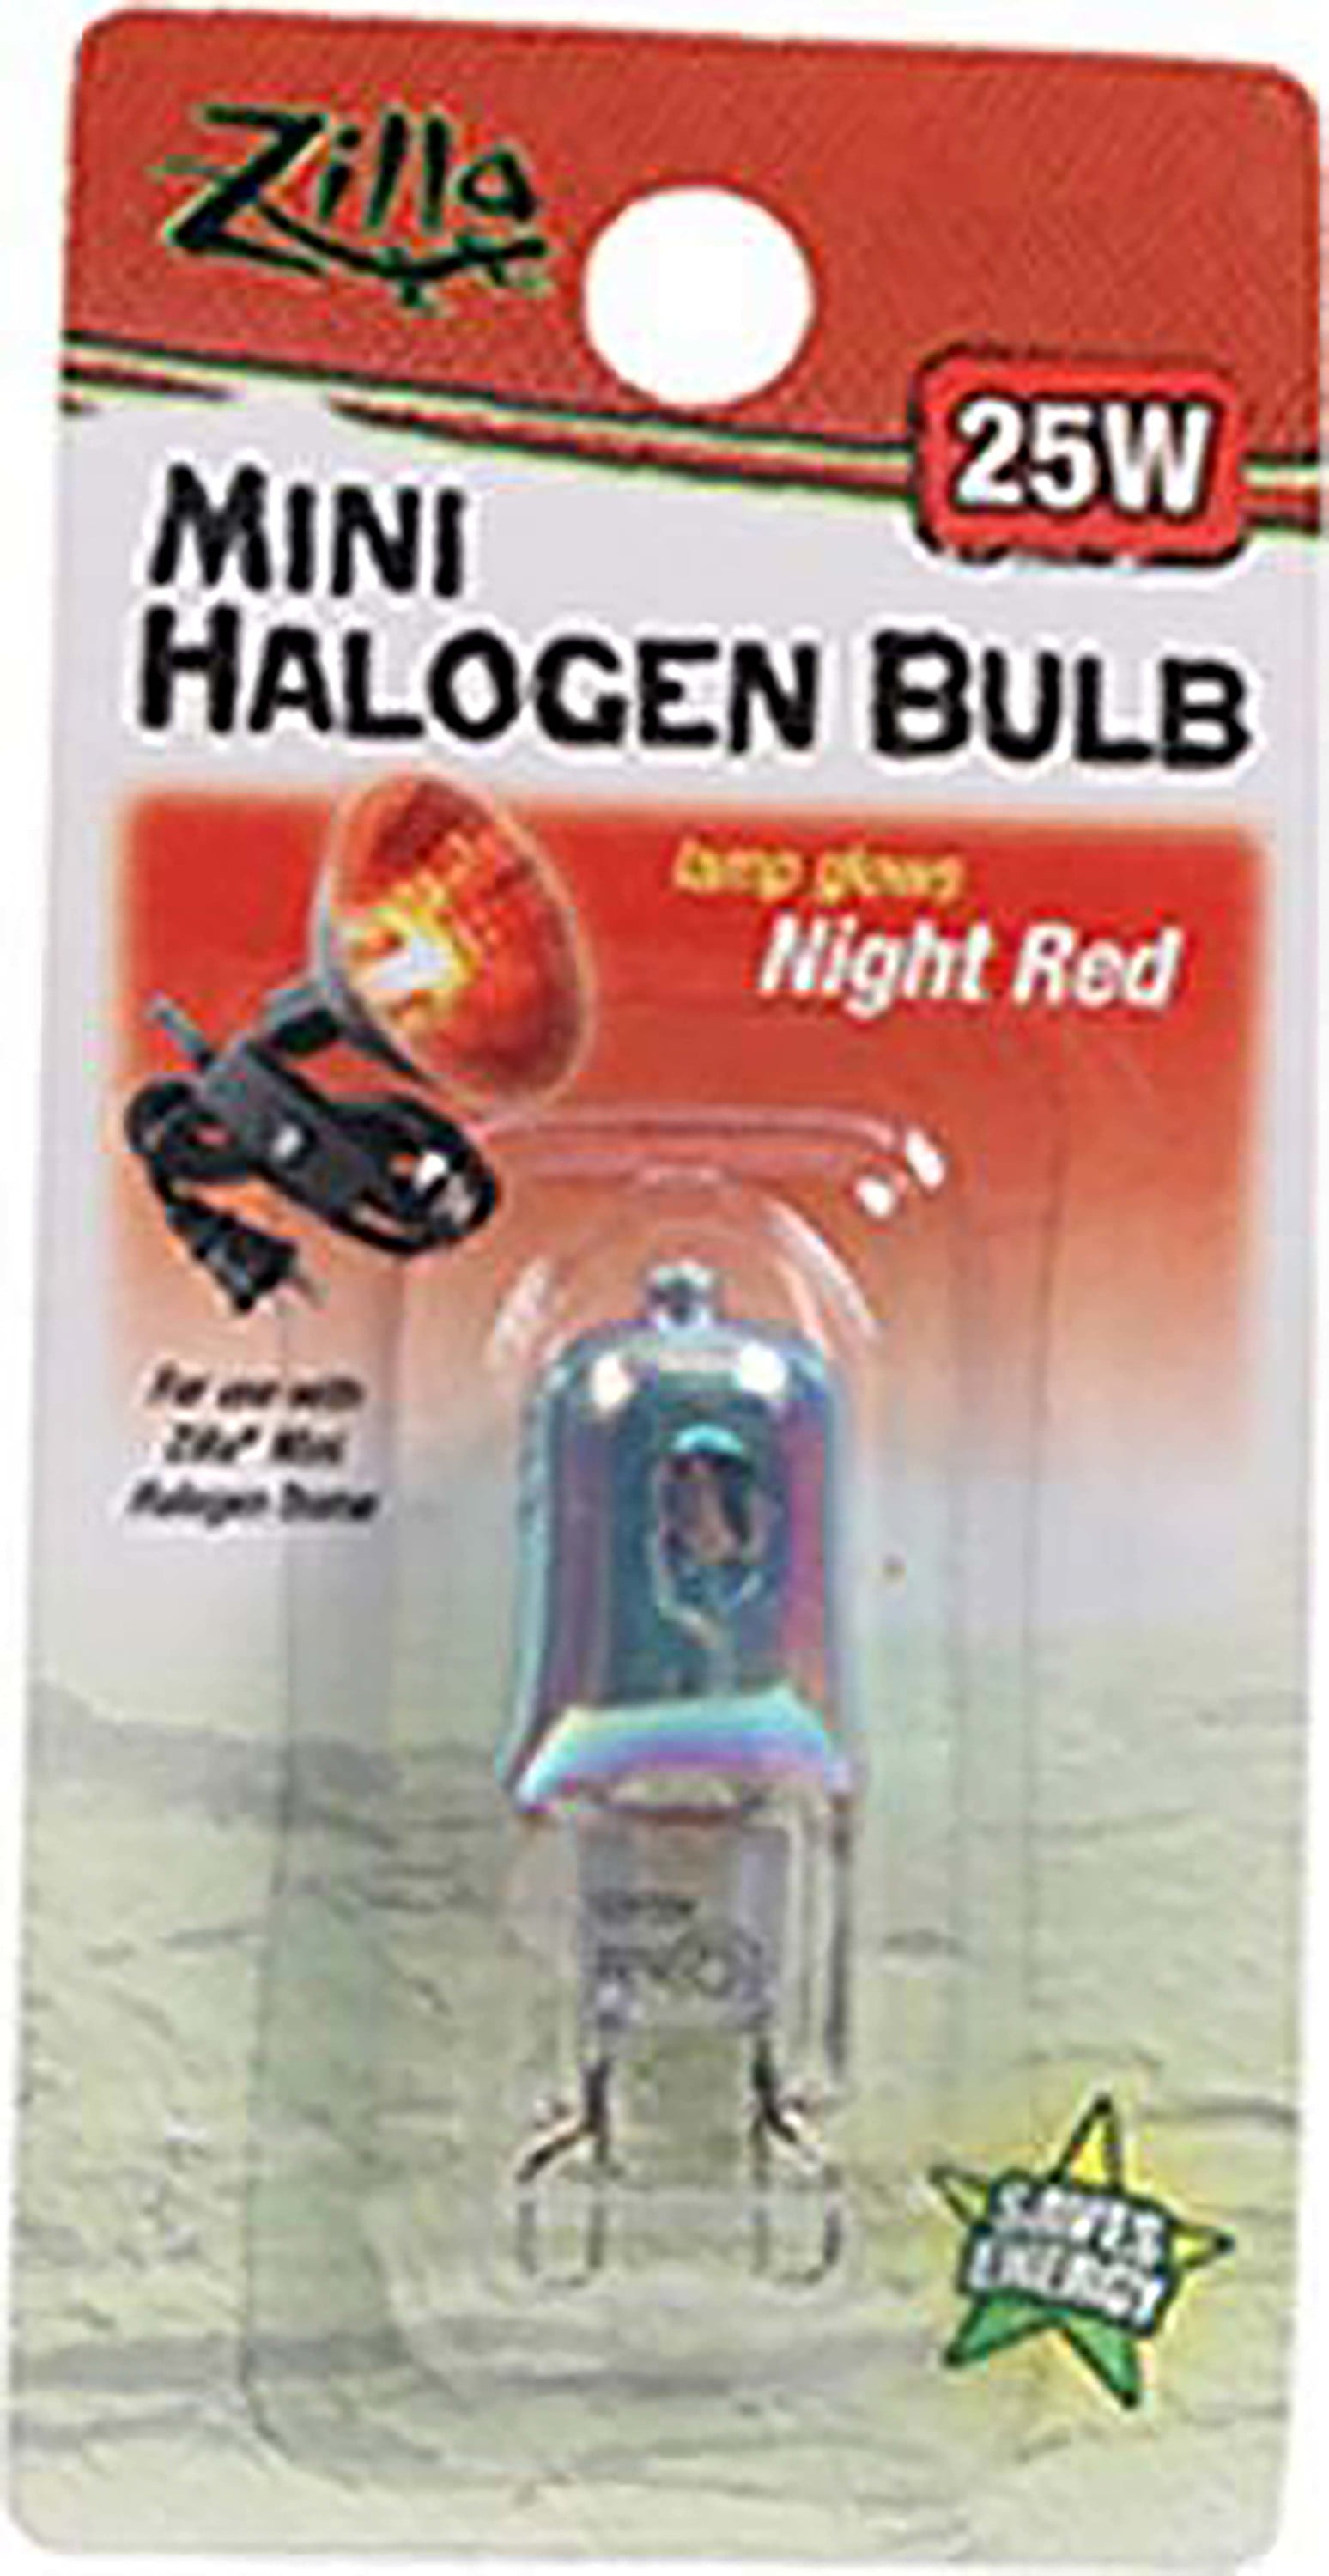 Zilla 2 Pack of Mini Halogen Bulb Day Blue 25 Watt